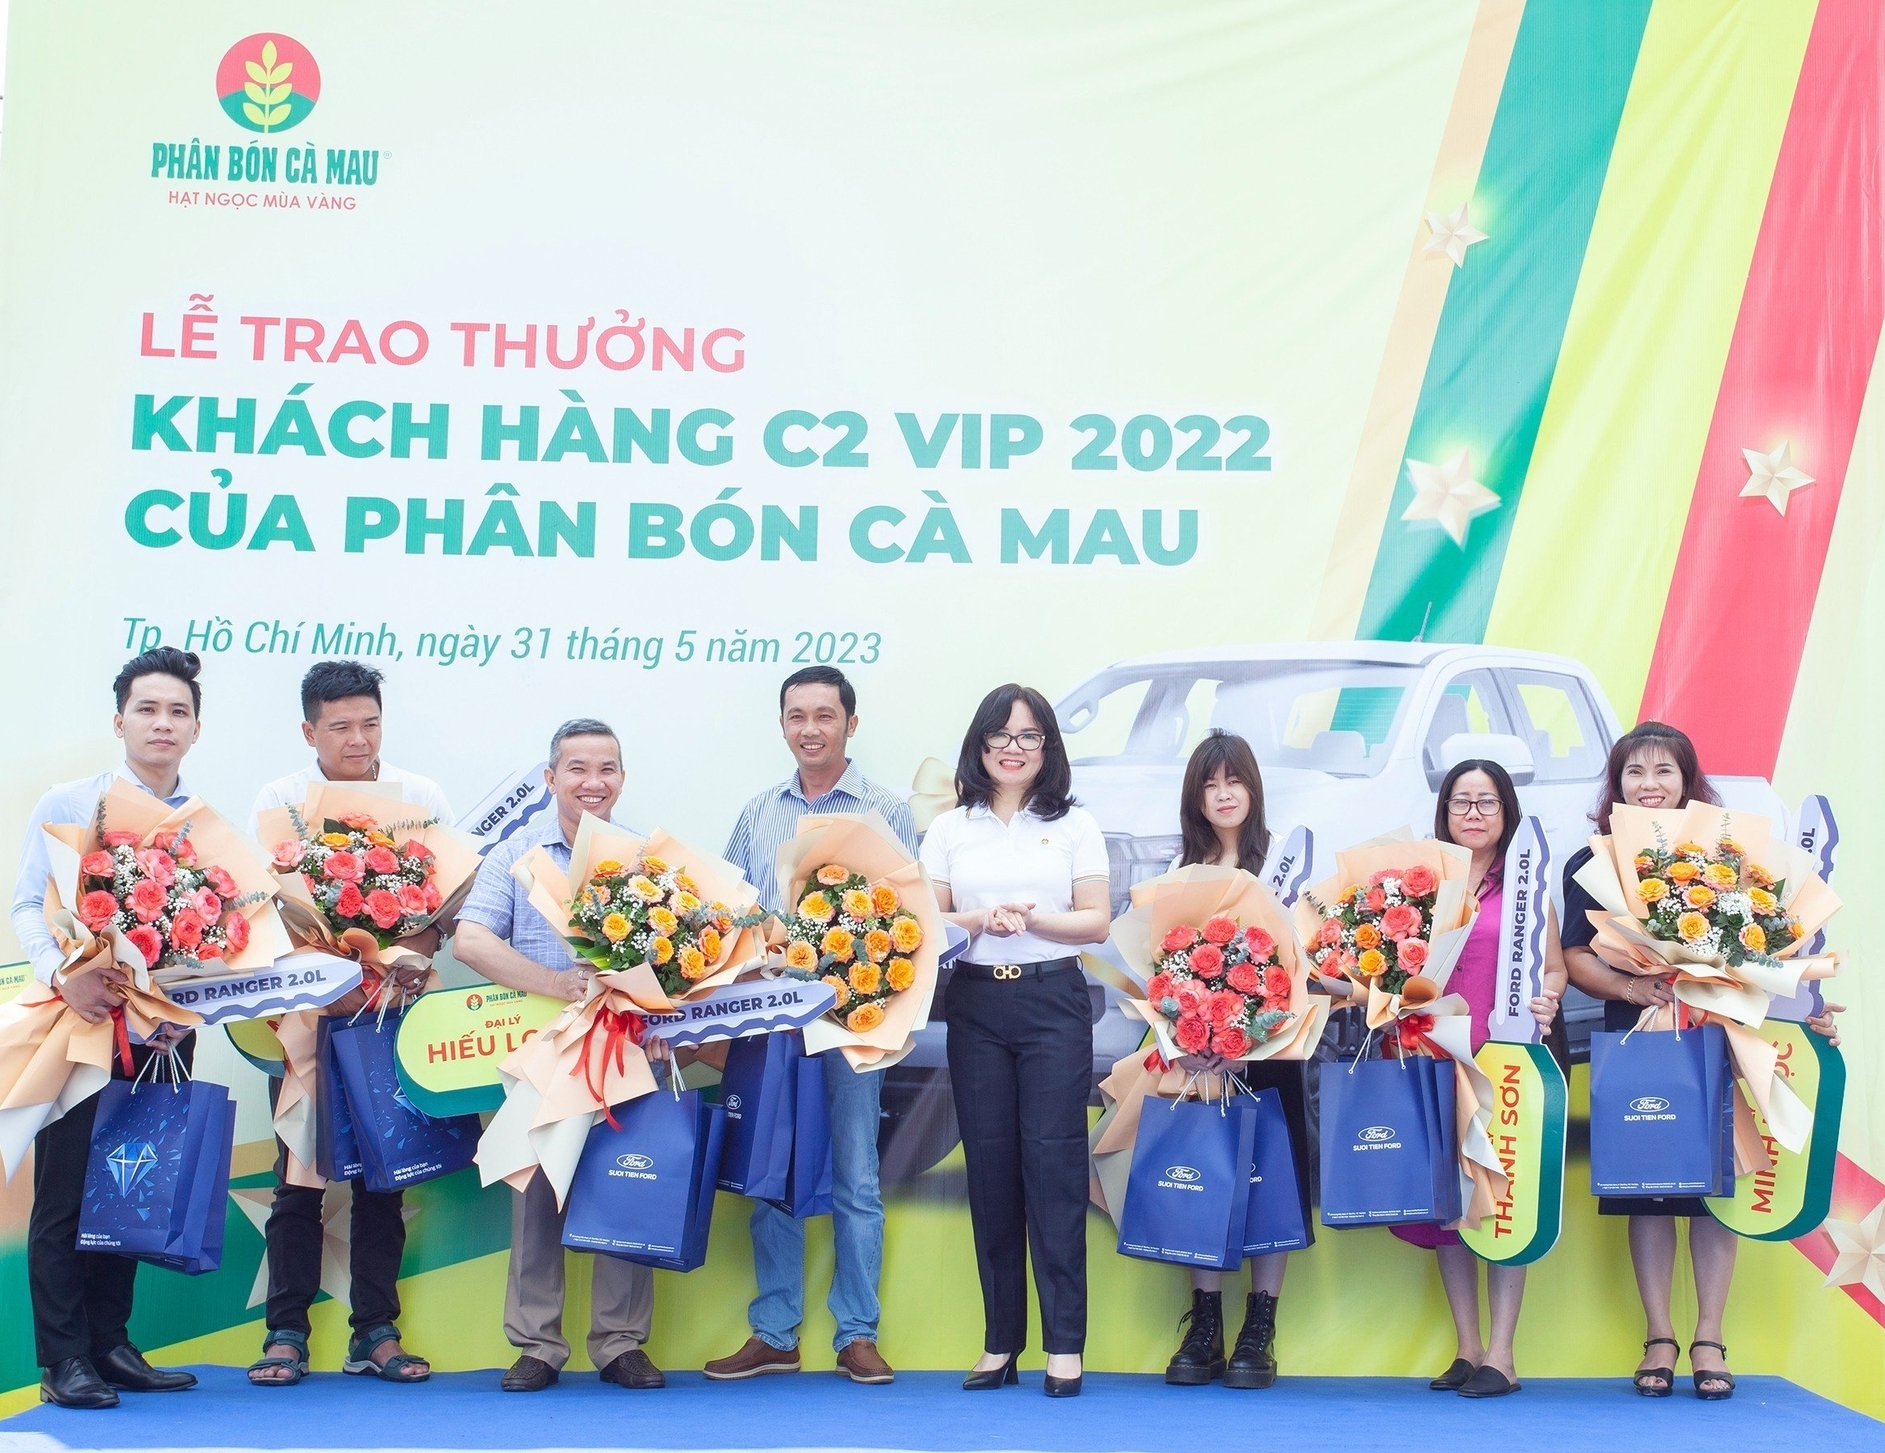 Bà Nguyễn Thị Hiền, Phó Tổng Giám đốc PVCFC (áo trắng giữa) trao ô tô cho 7 đại lý C2 xuất sắc.